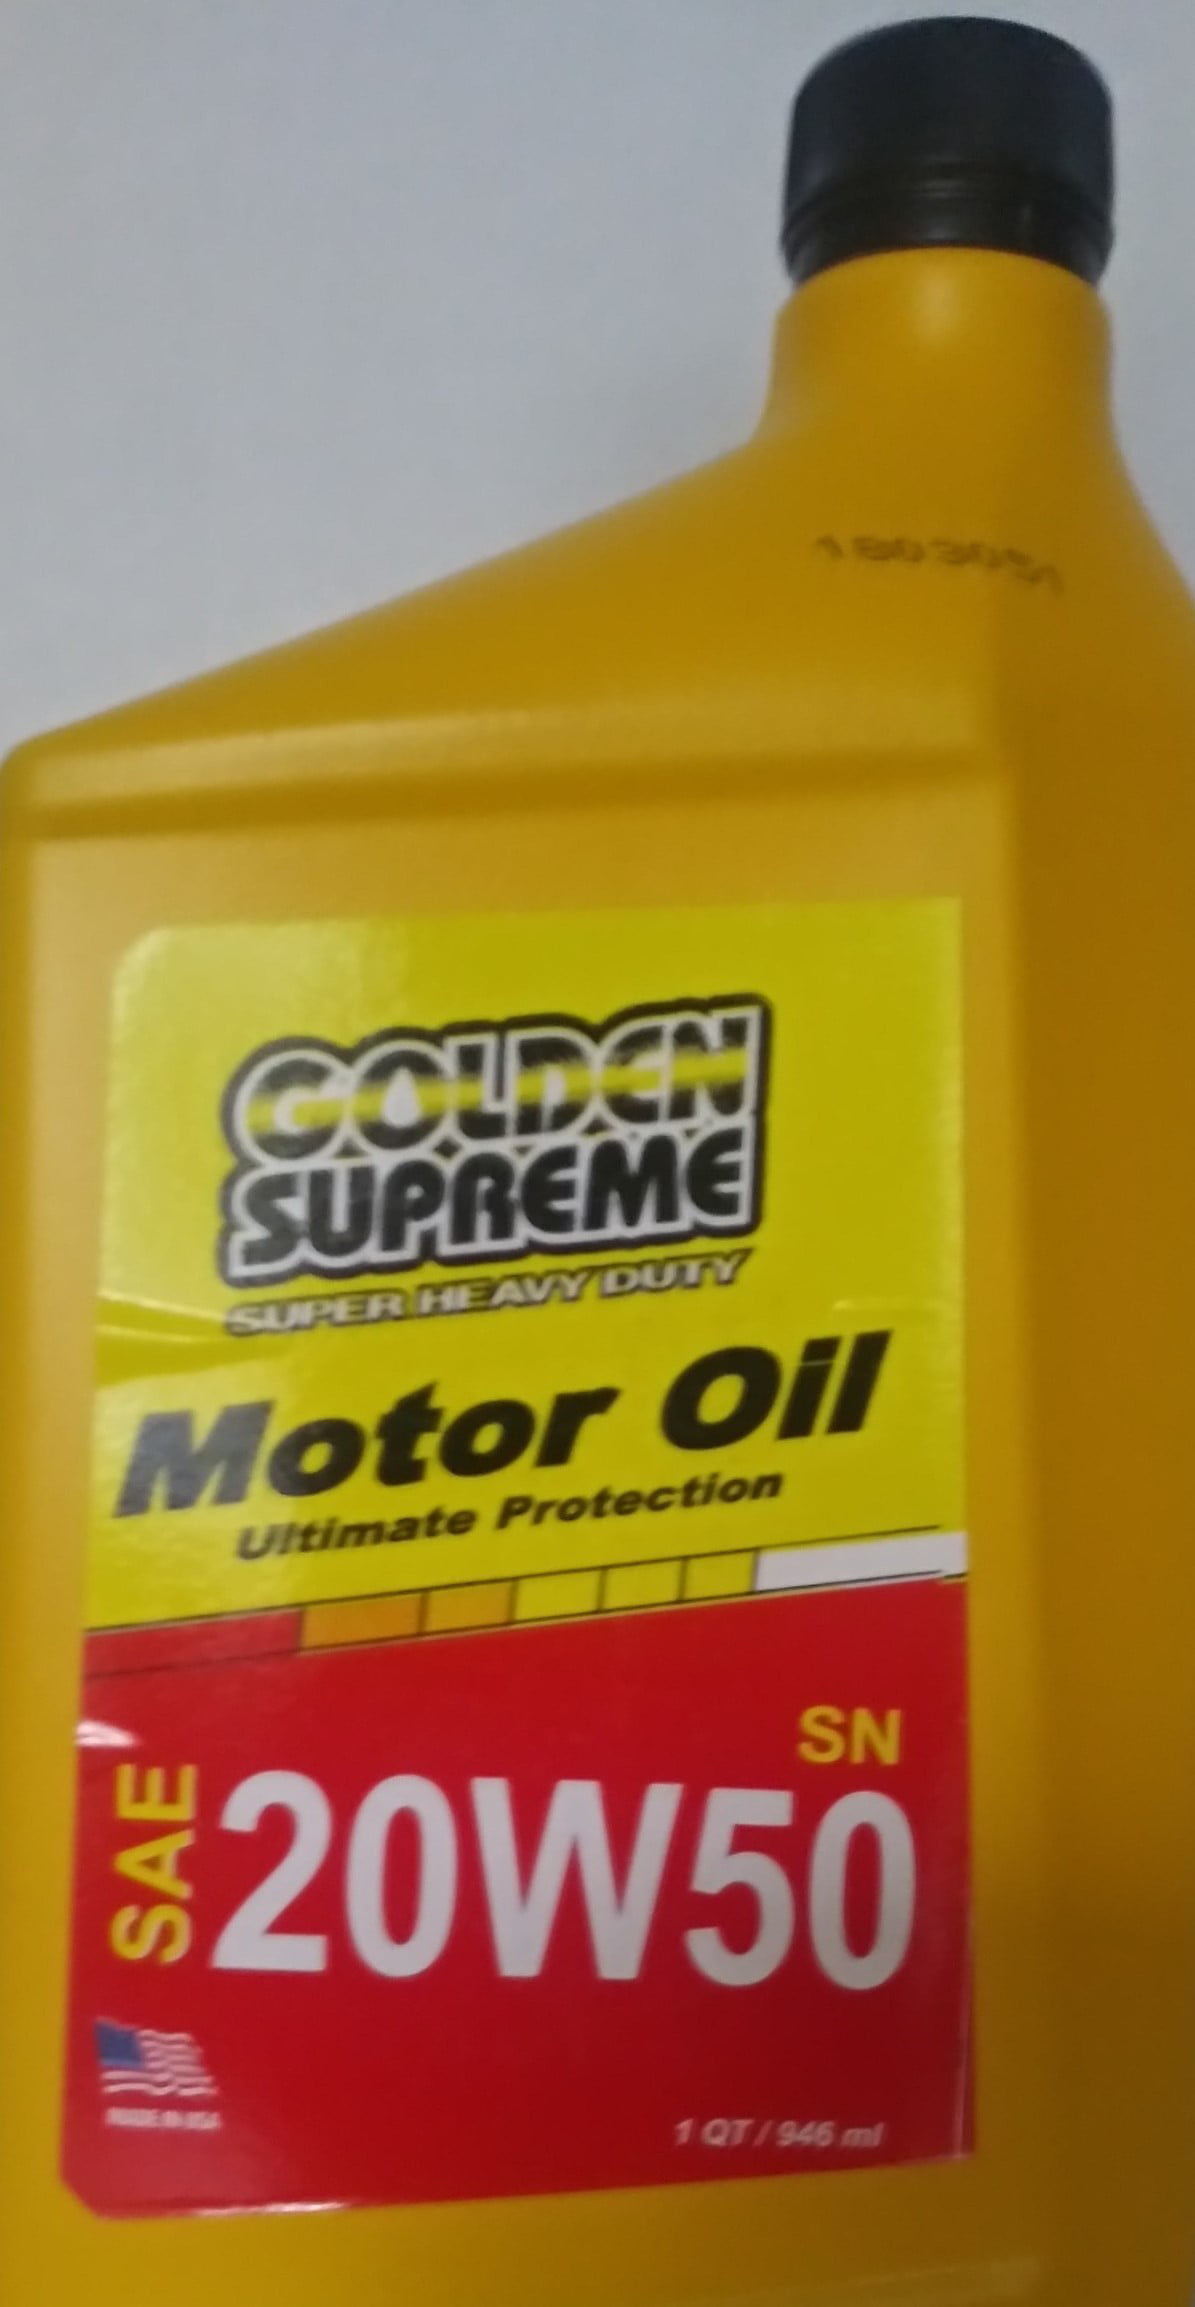 Negociar ir a buscar Cercanamente Golden Supreme 10W30 Conventional Motor Oil ( Pack Of 6) - Walmart.com